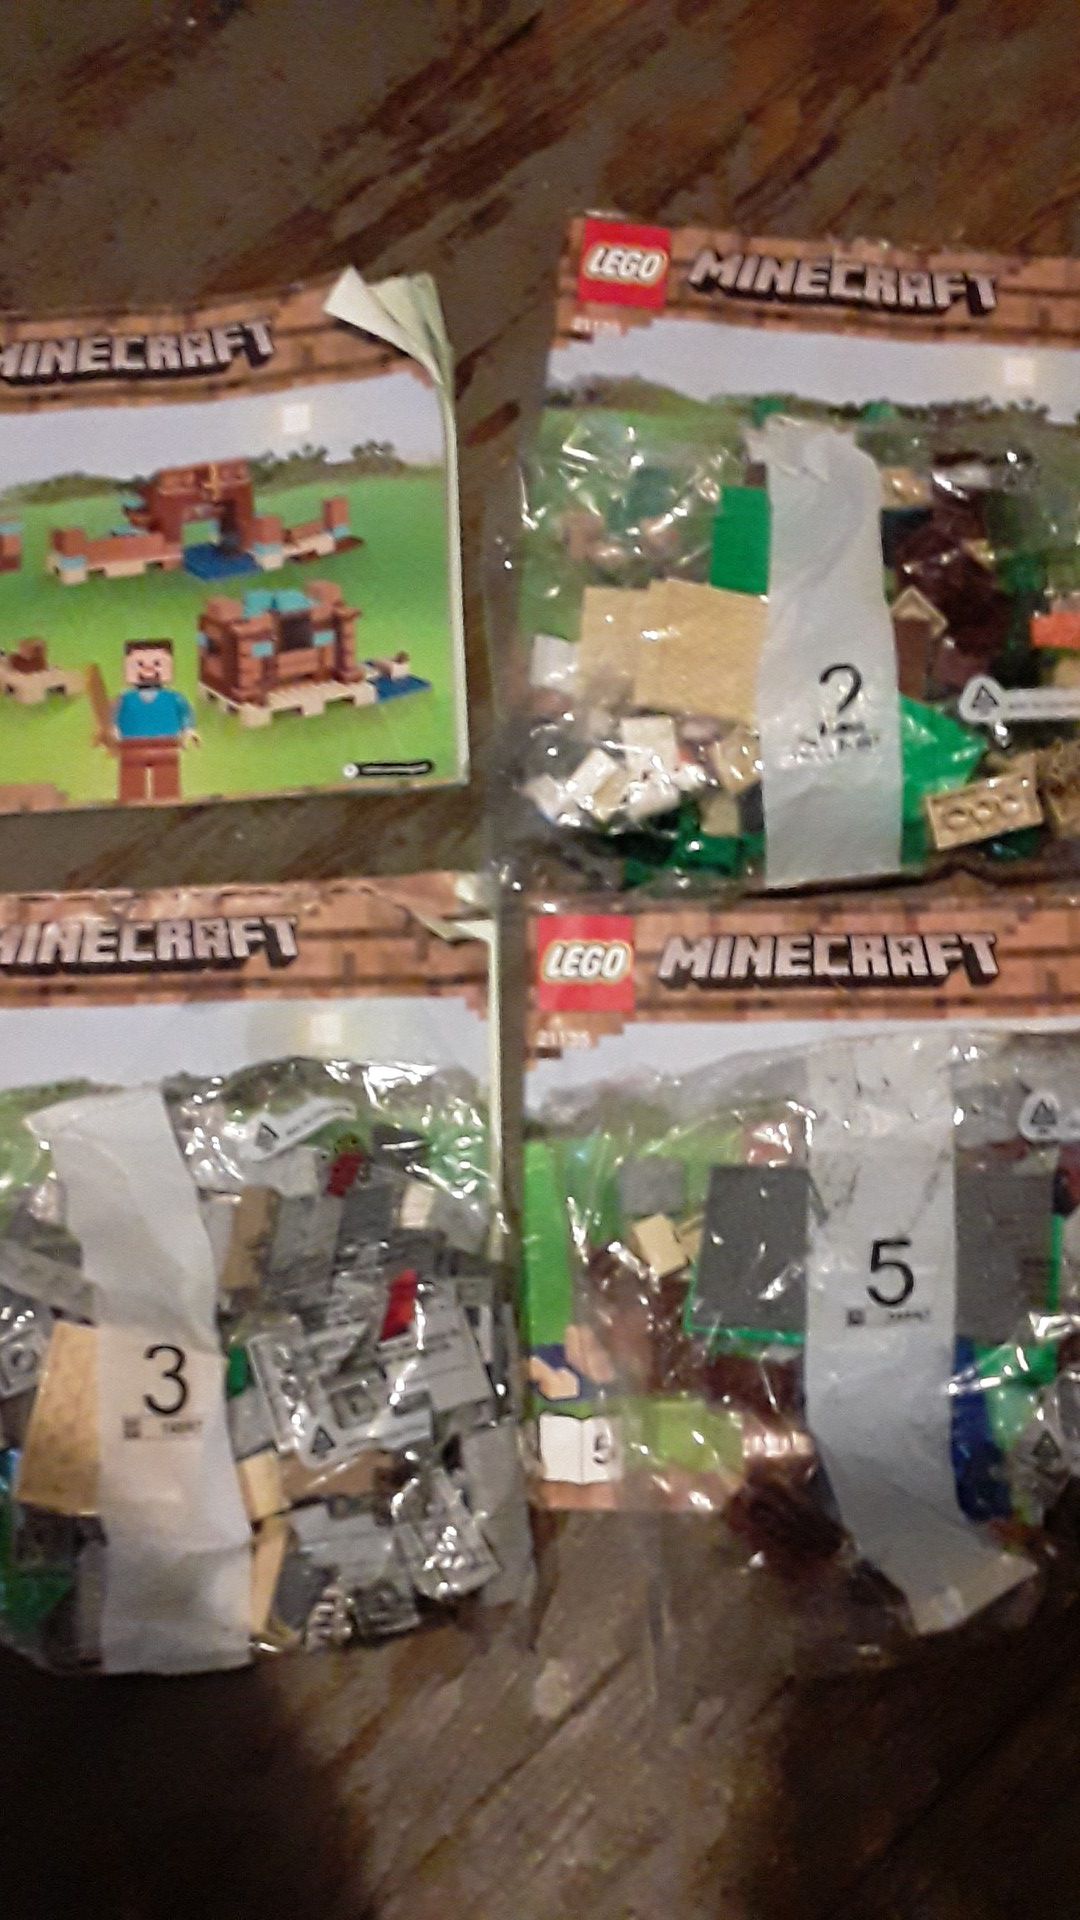 Lego Minecraft & Lego The Ninjago Movie sets